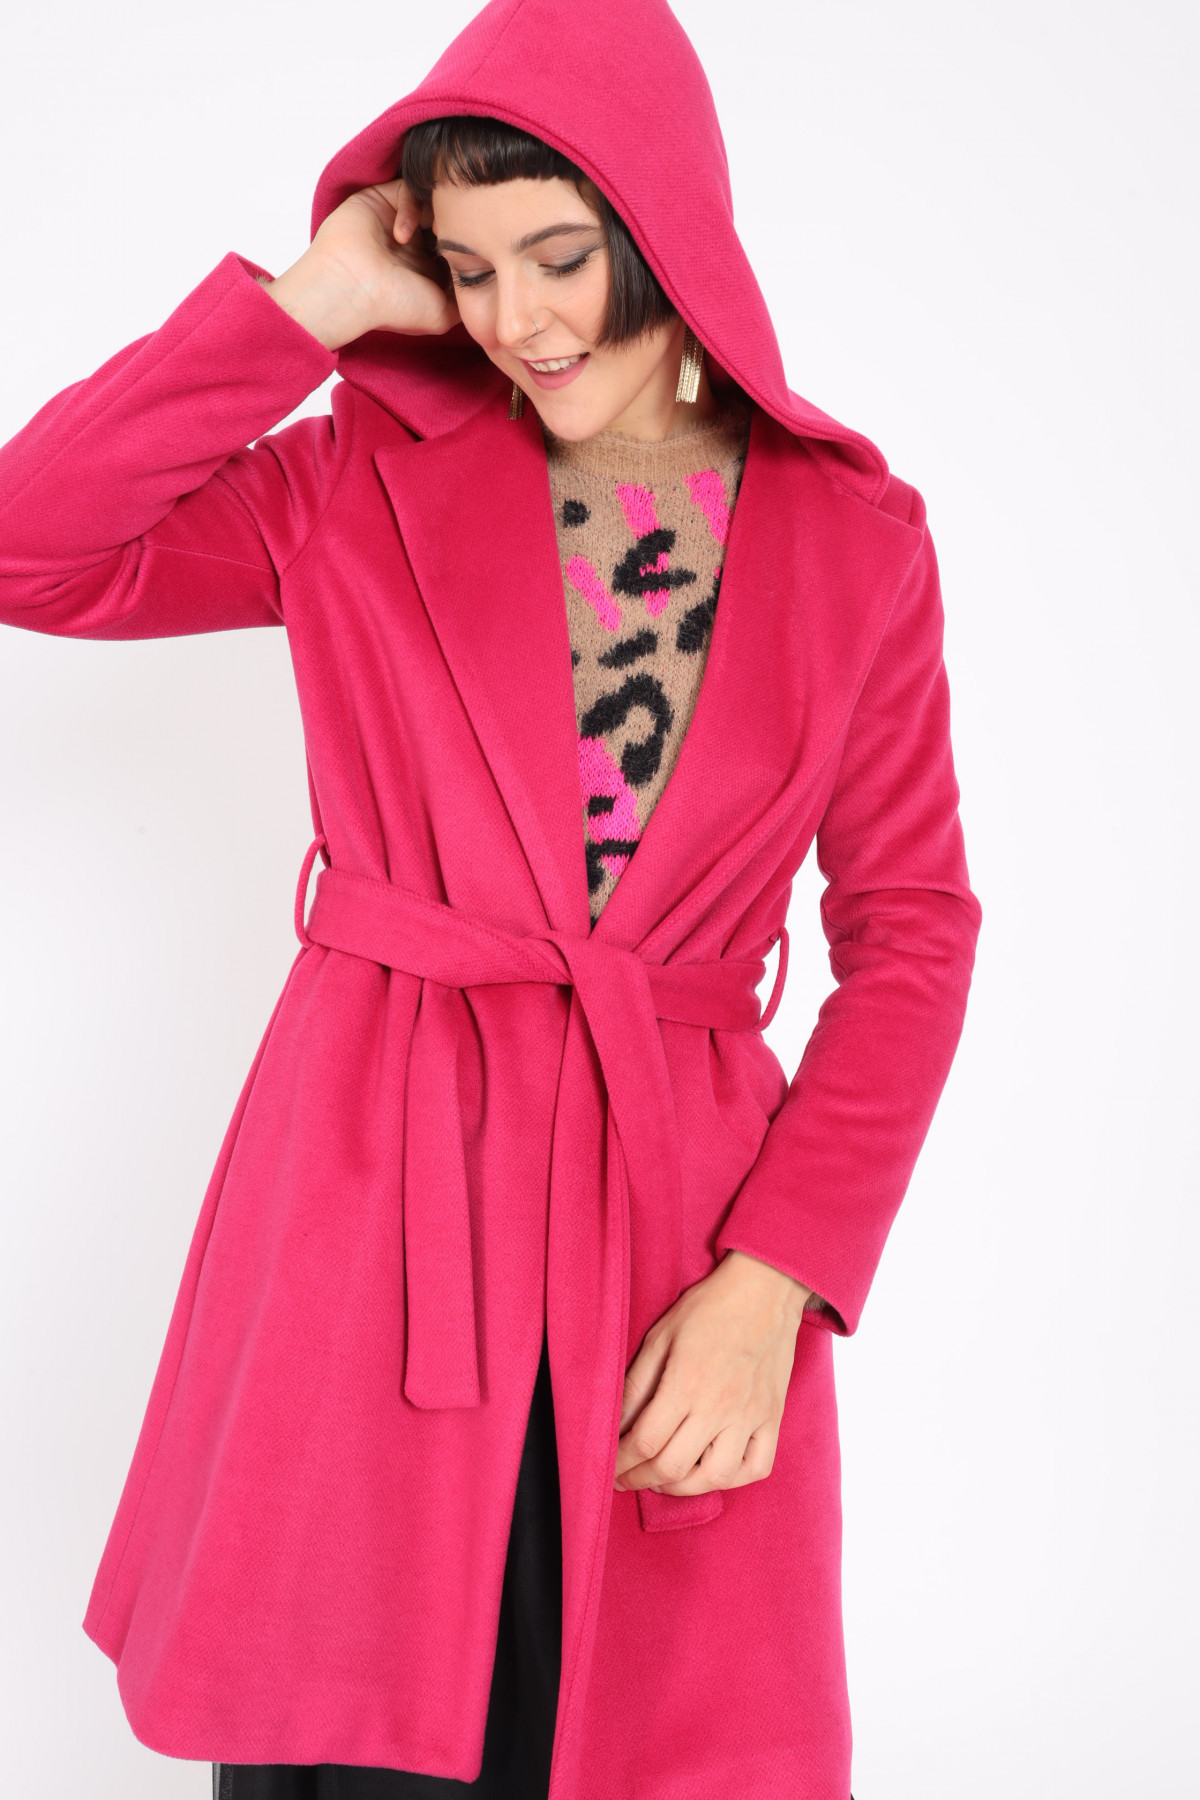 Mantel mit Kapuze und Gürtel in passender Farbe